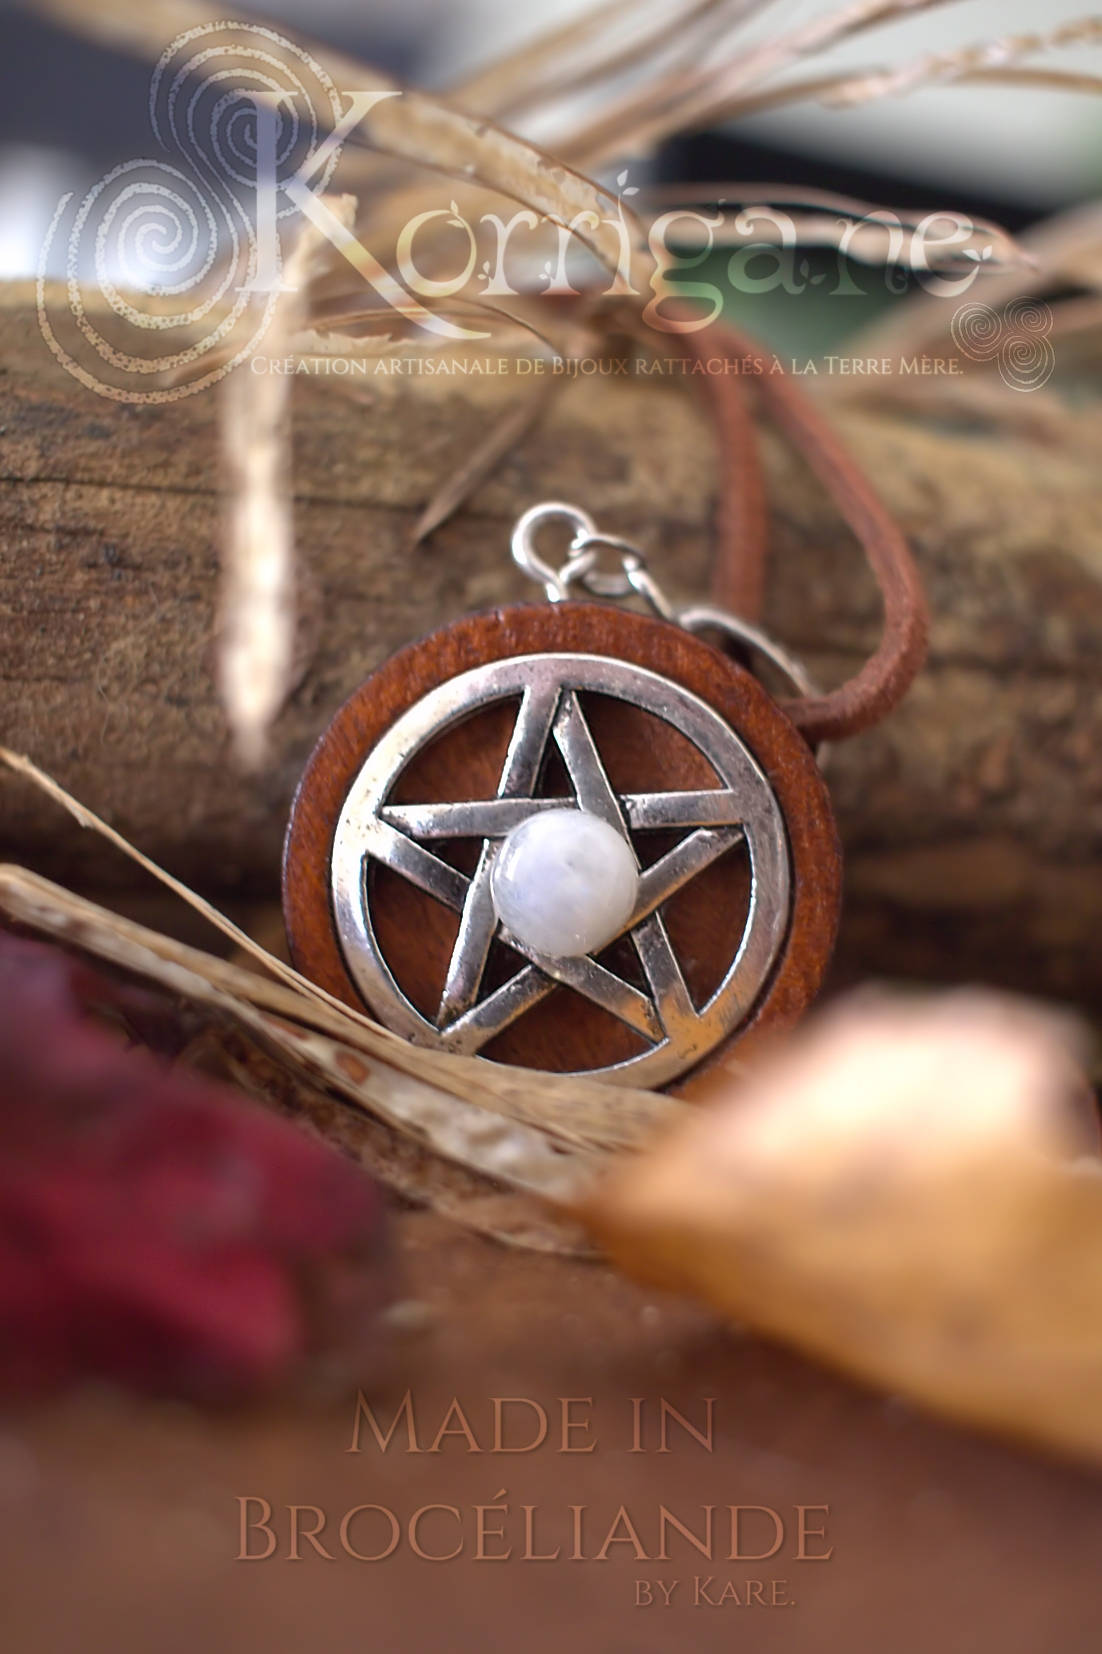 Amulette Pentagramme Collier de Protection Païen - Labradorite - Pentacle - Wicca Talisman de Sorcière - Bois Laiton Korrigane